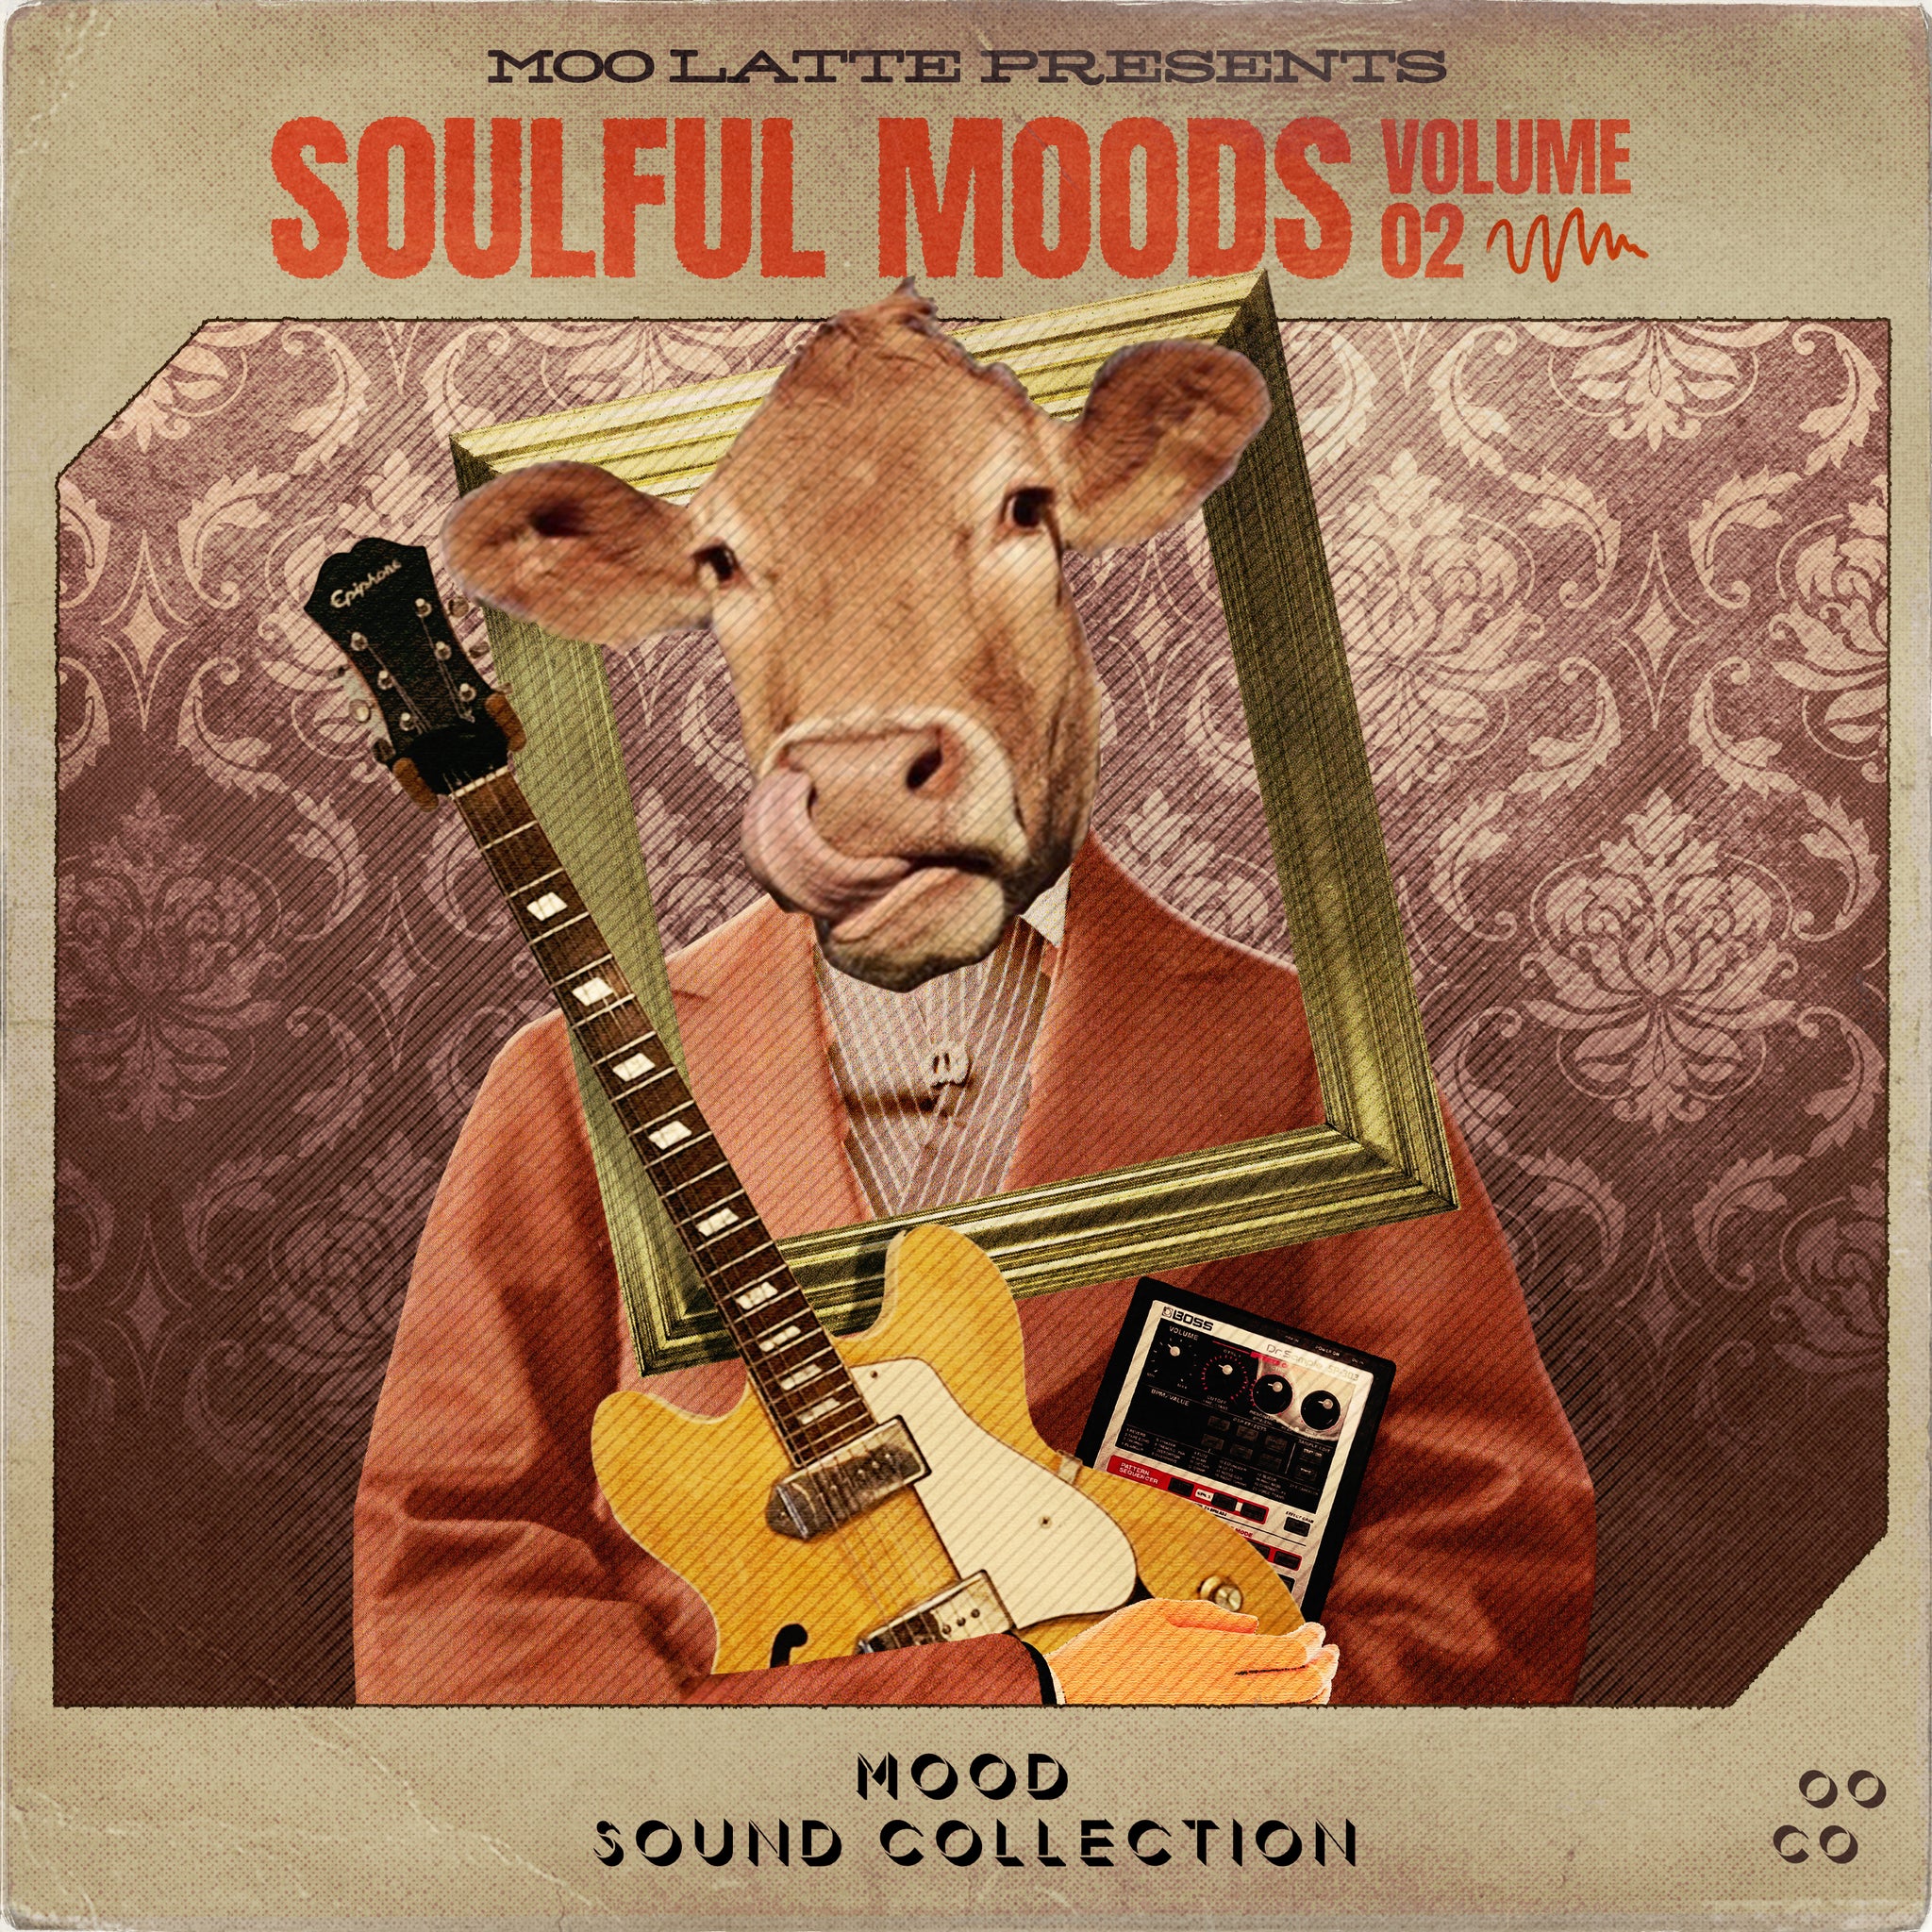 Soulful Moods Vol. 2